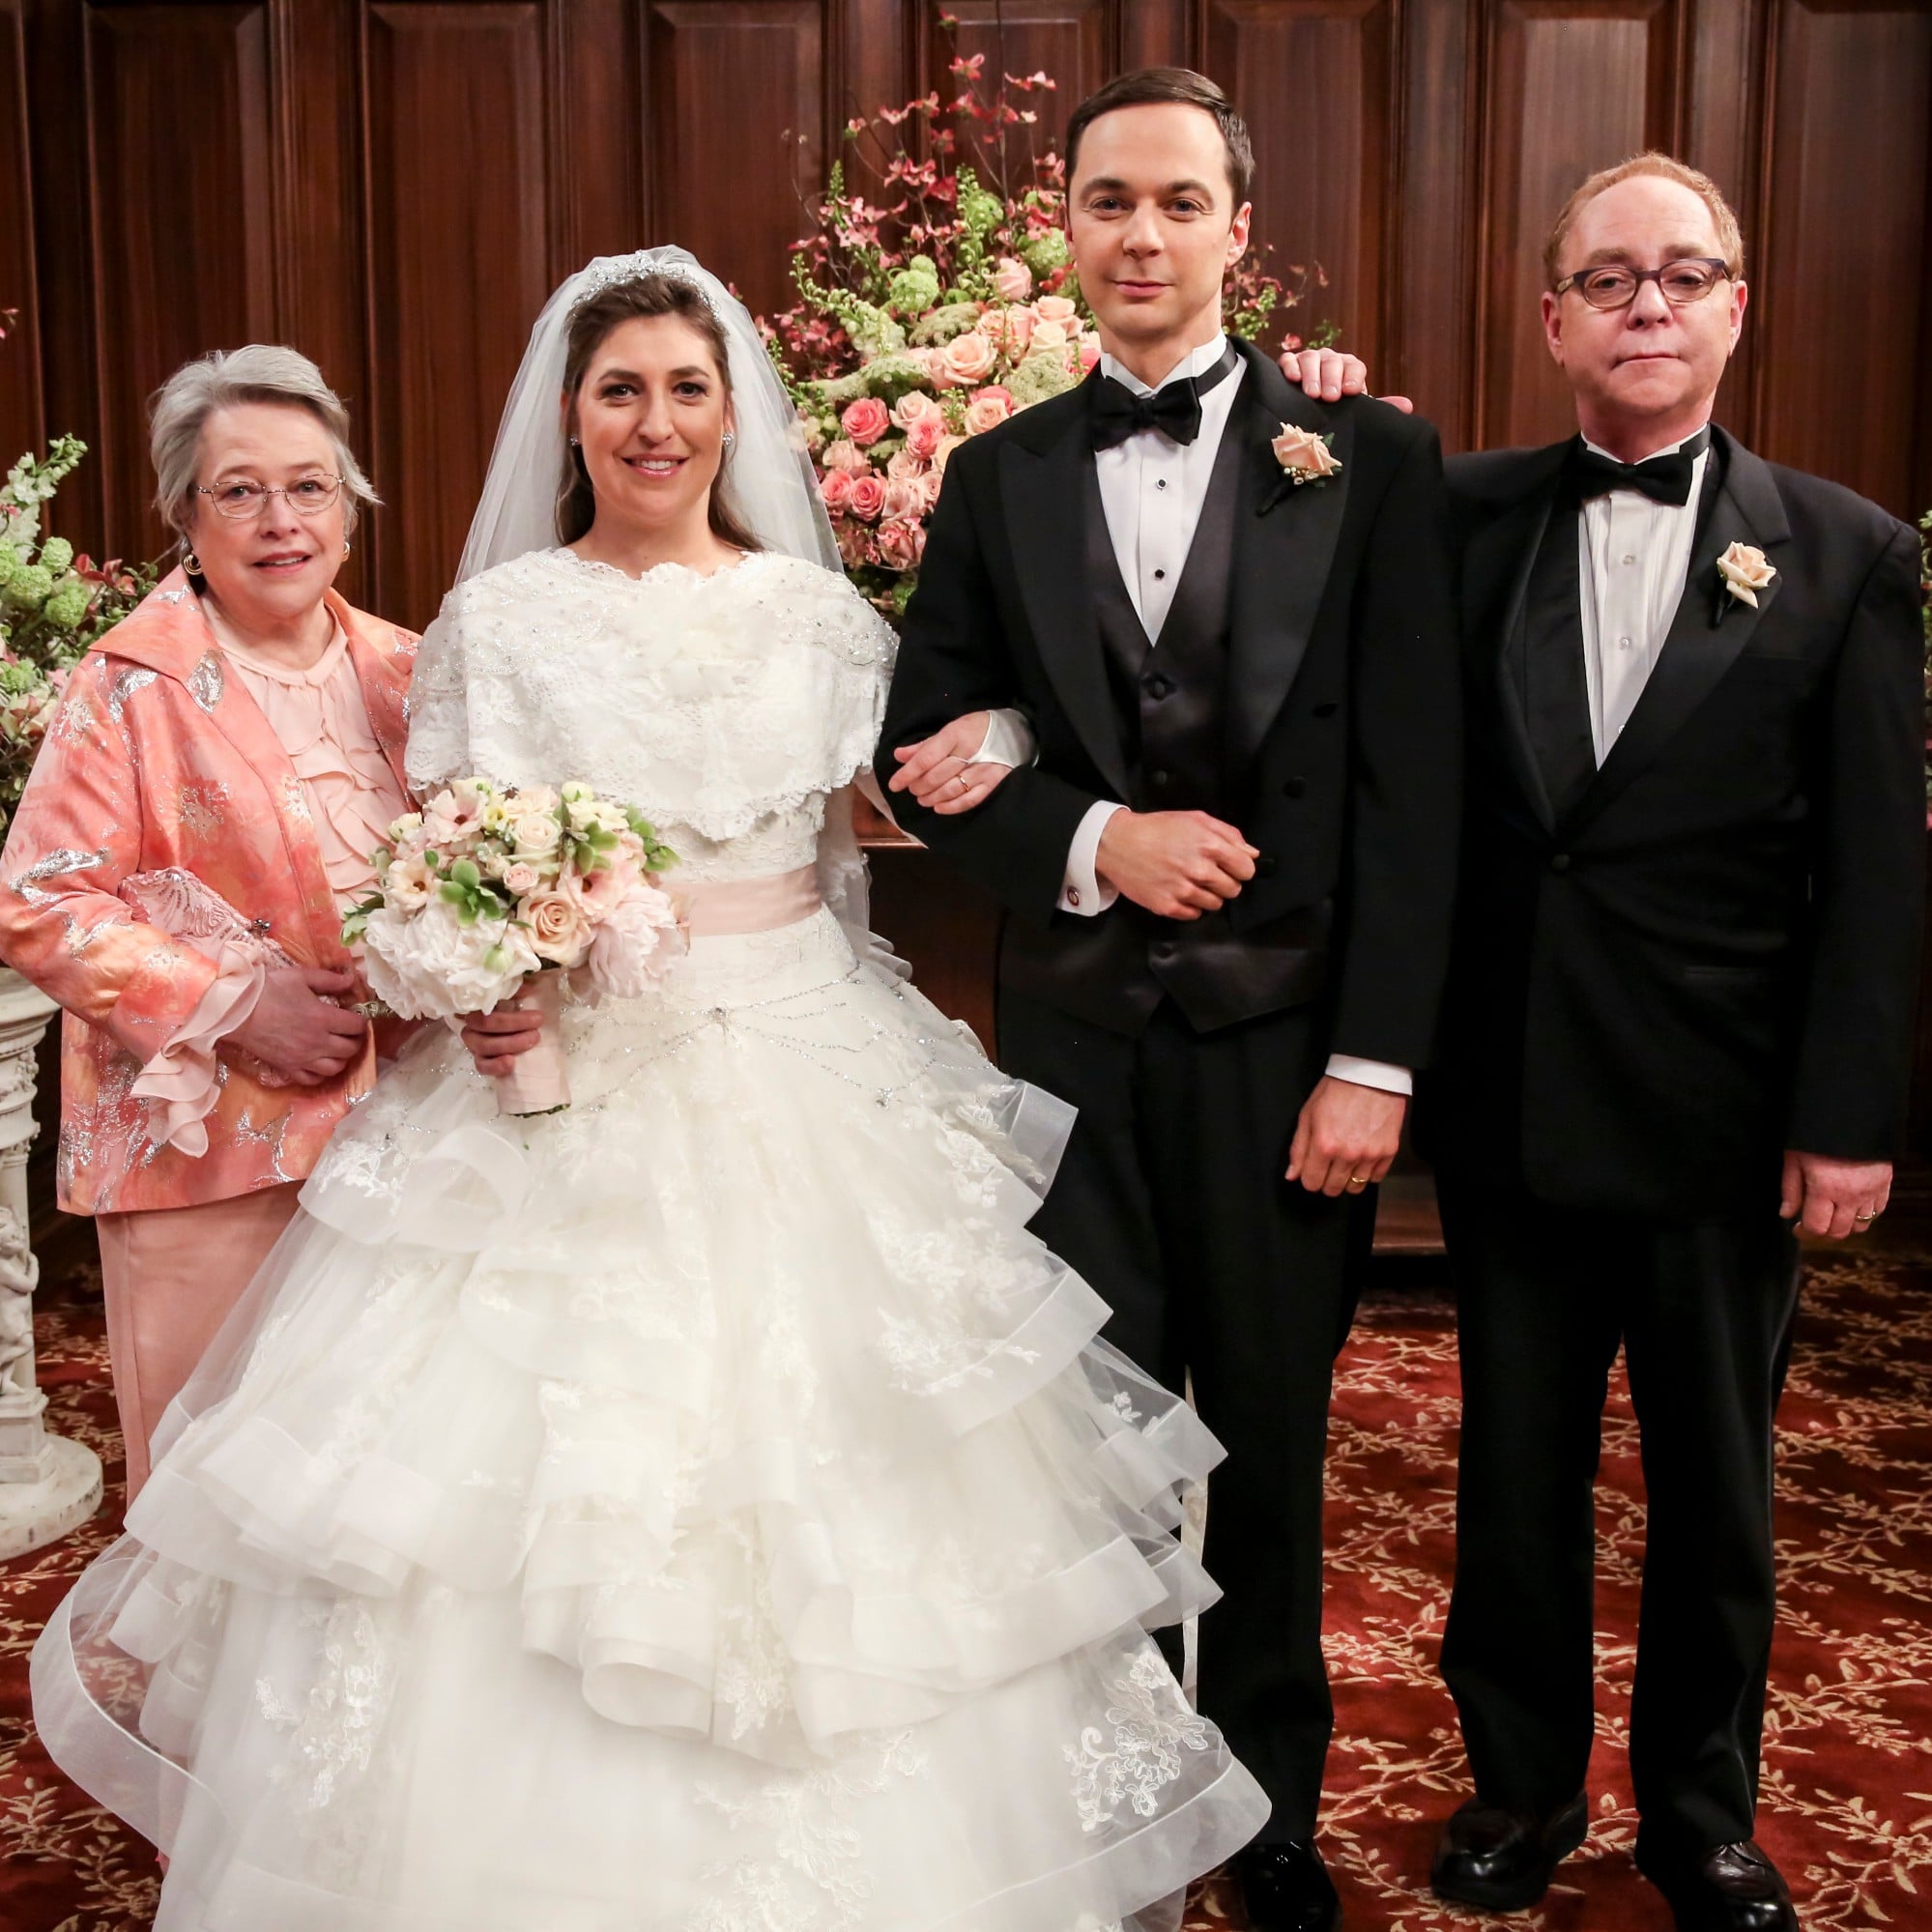 Sheldon and Amy's Wedding on Big Bang Theory Photos | Entertainment